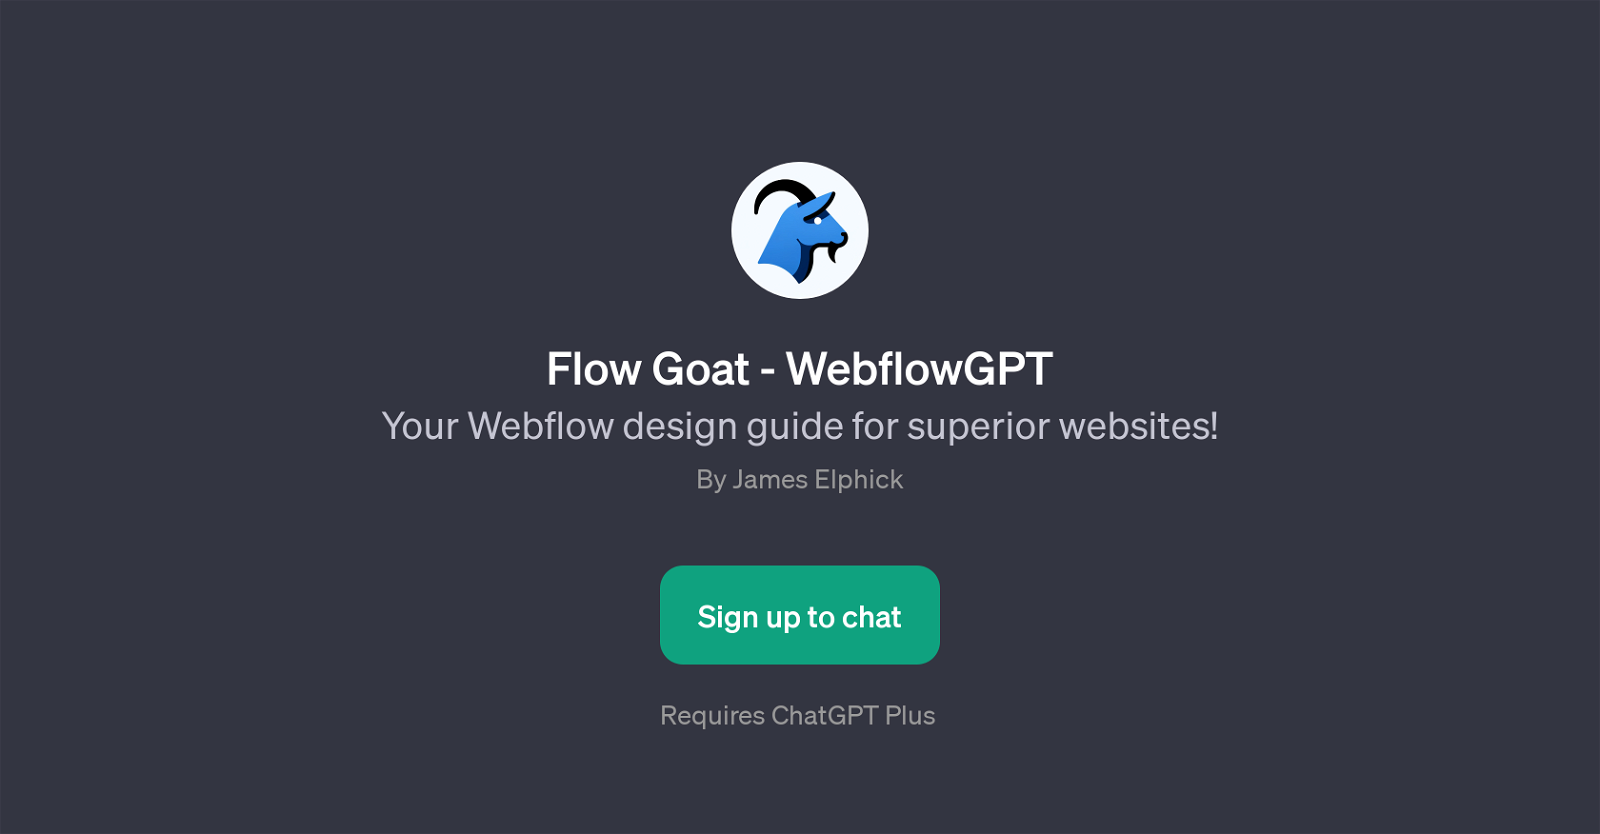 Flow Goat - WebflowGPT website